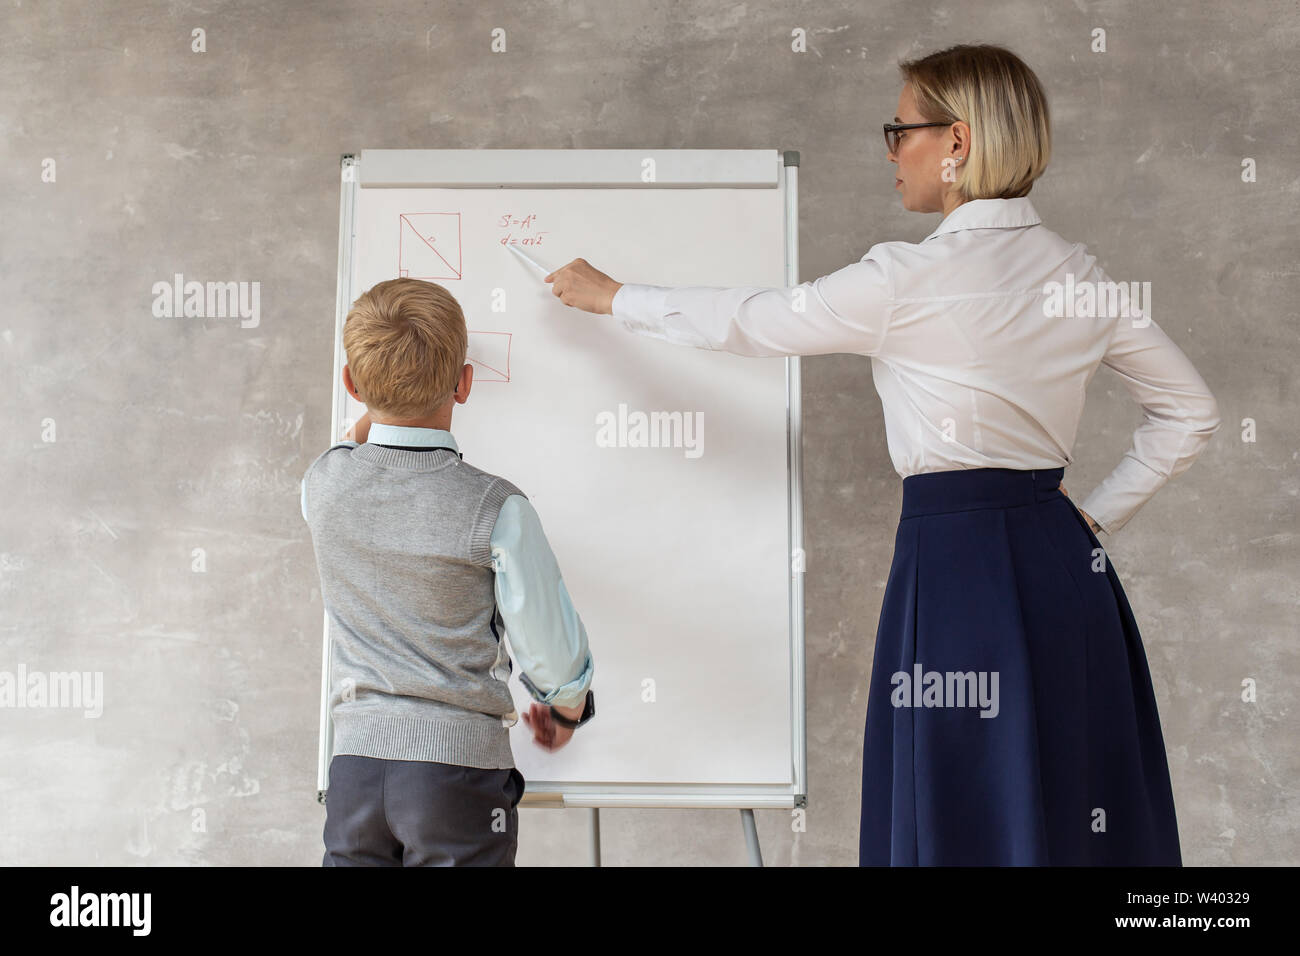 Un petit garçon portant des vêtements décontractés géométrie dessin figure sur le bureau tandis que son professeur lui corriger. Banque D'Images